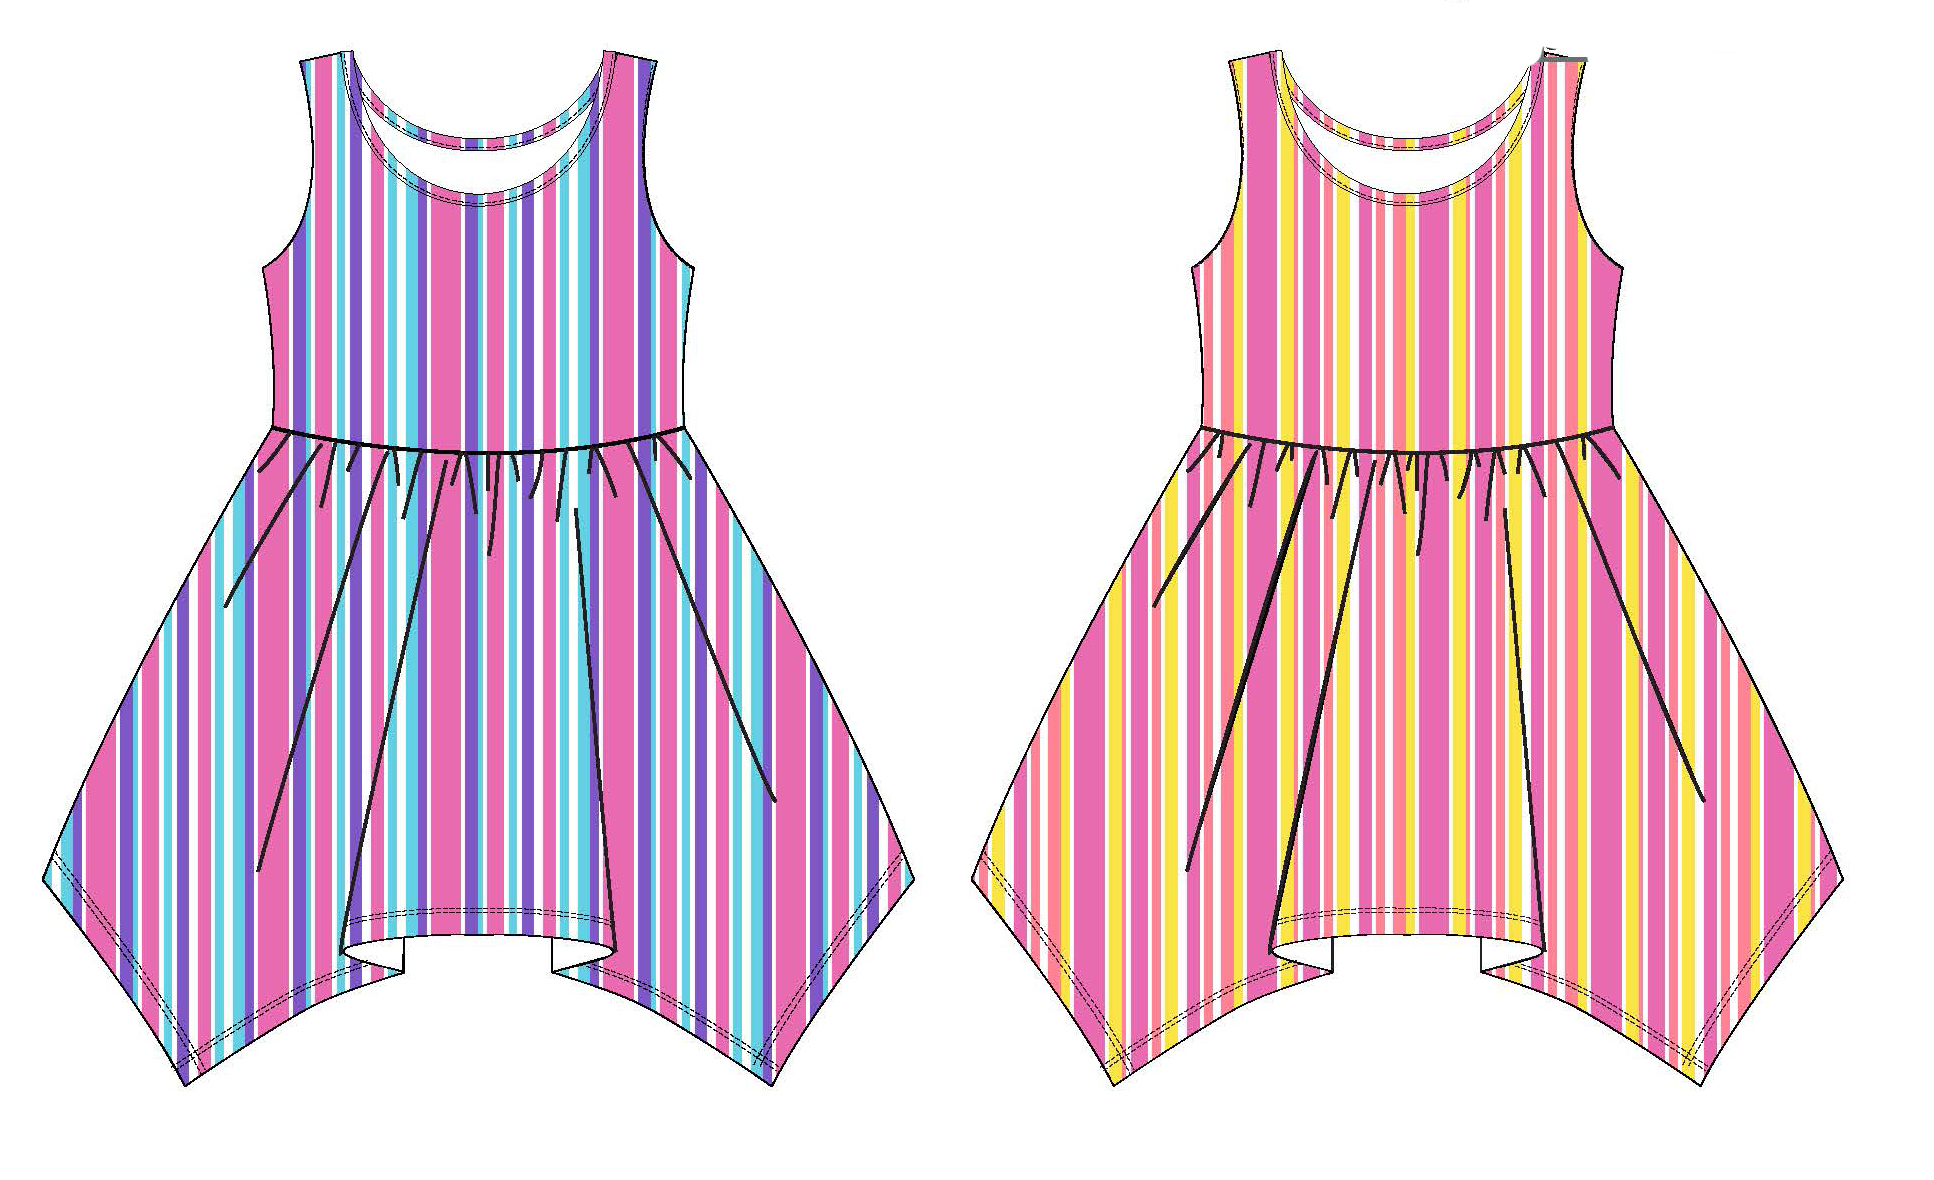 Baby Girl's Sleeveless Knit Shirtwaist DRESS w/ Two Tone Stripes - Size 12M-24M